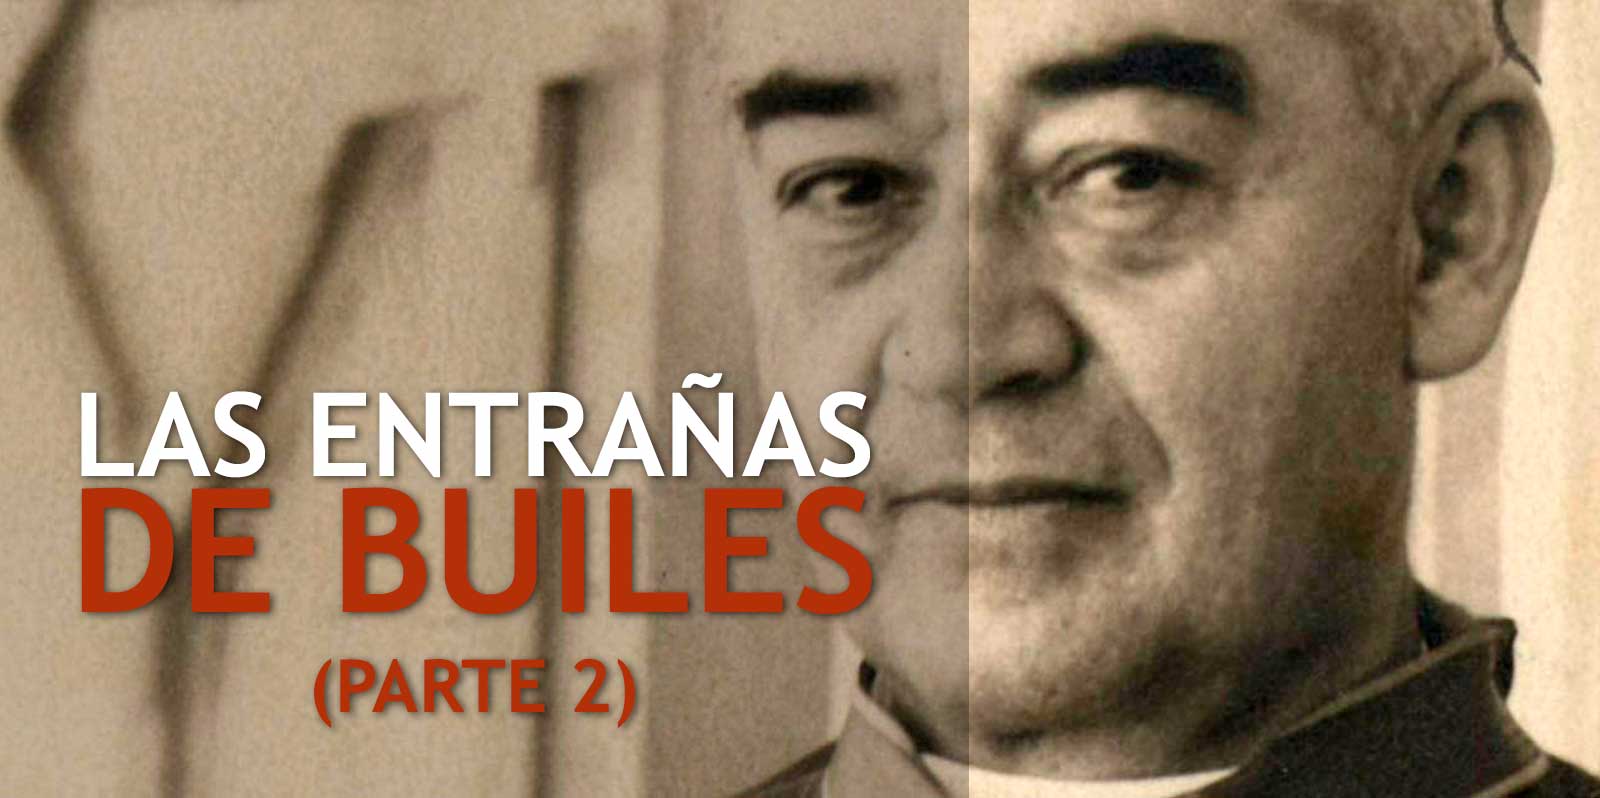 Miguel Angel Builes